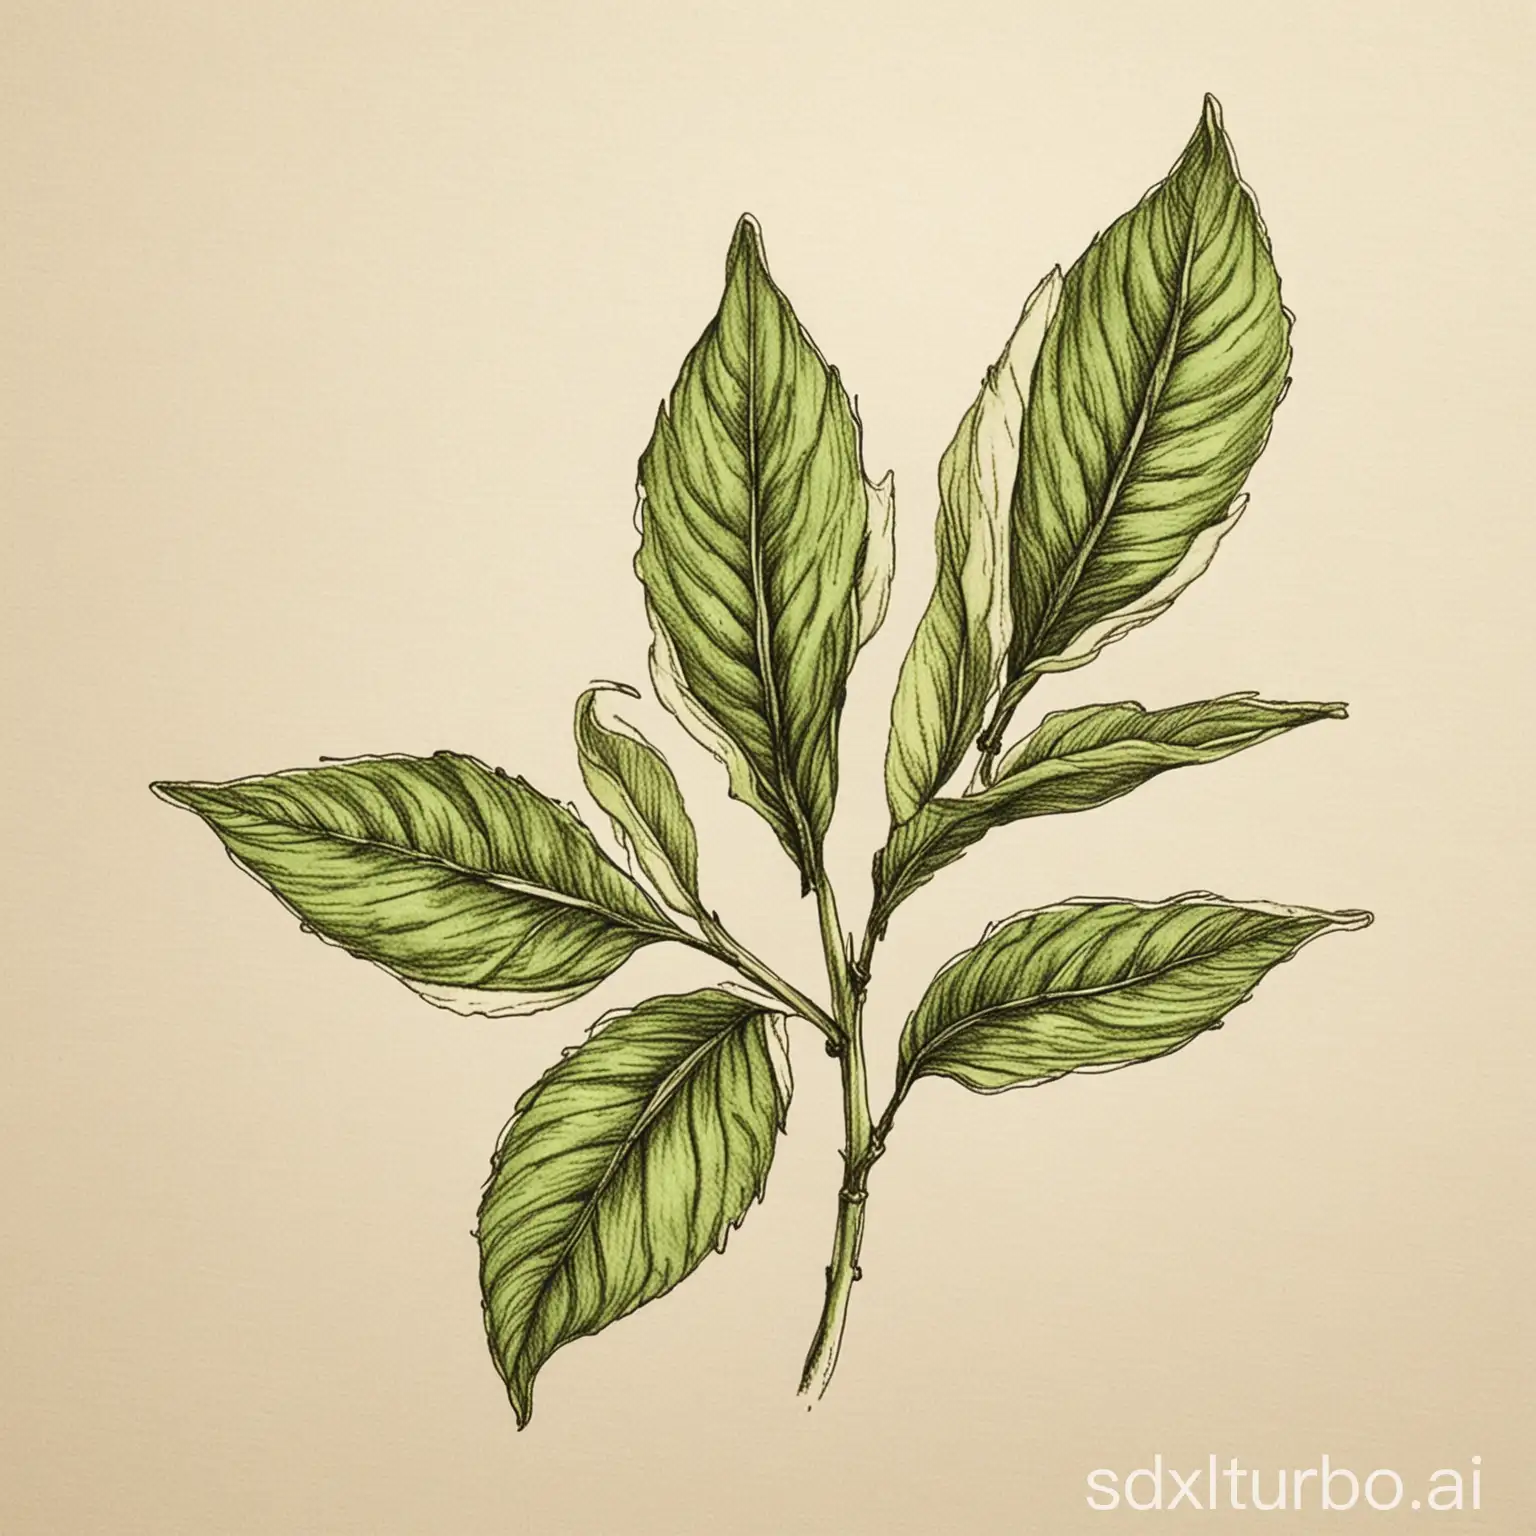 Tea leaf hand-drawn